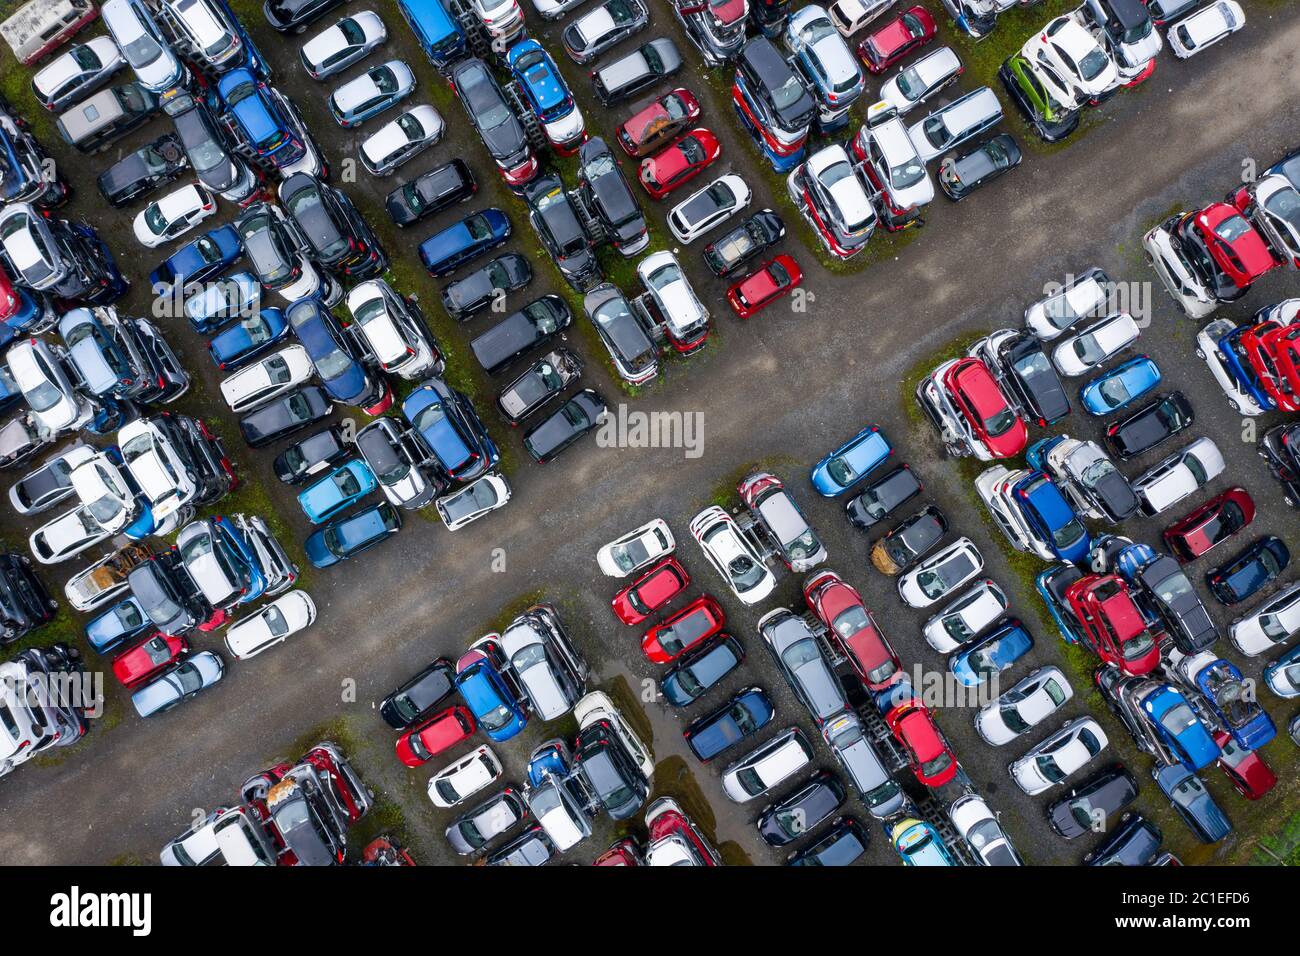 Luftaufnahme von vielen Autos in einem Auto breaking Hof oder Schrott Hof in Schottland, Großbritannien gelagert. Stockfoto